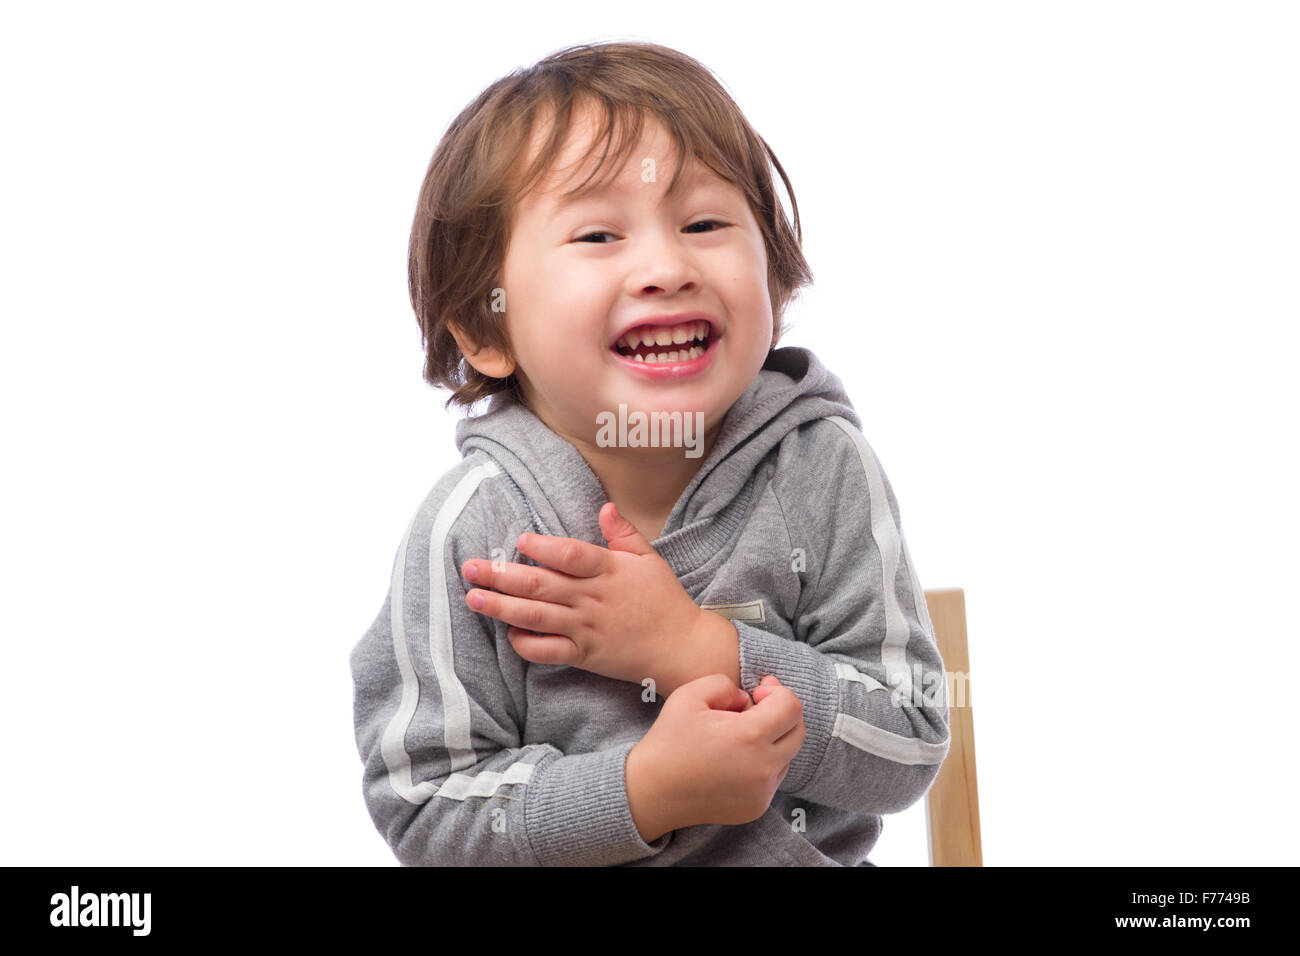 Ein netter 3 jährige Junge mit einem glücklichen Ausdruck zittern und vorgibt, kalt auf einem weißen Hintergrund. Stockfoto